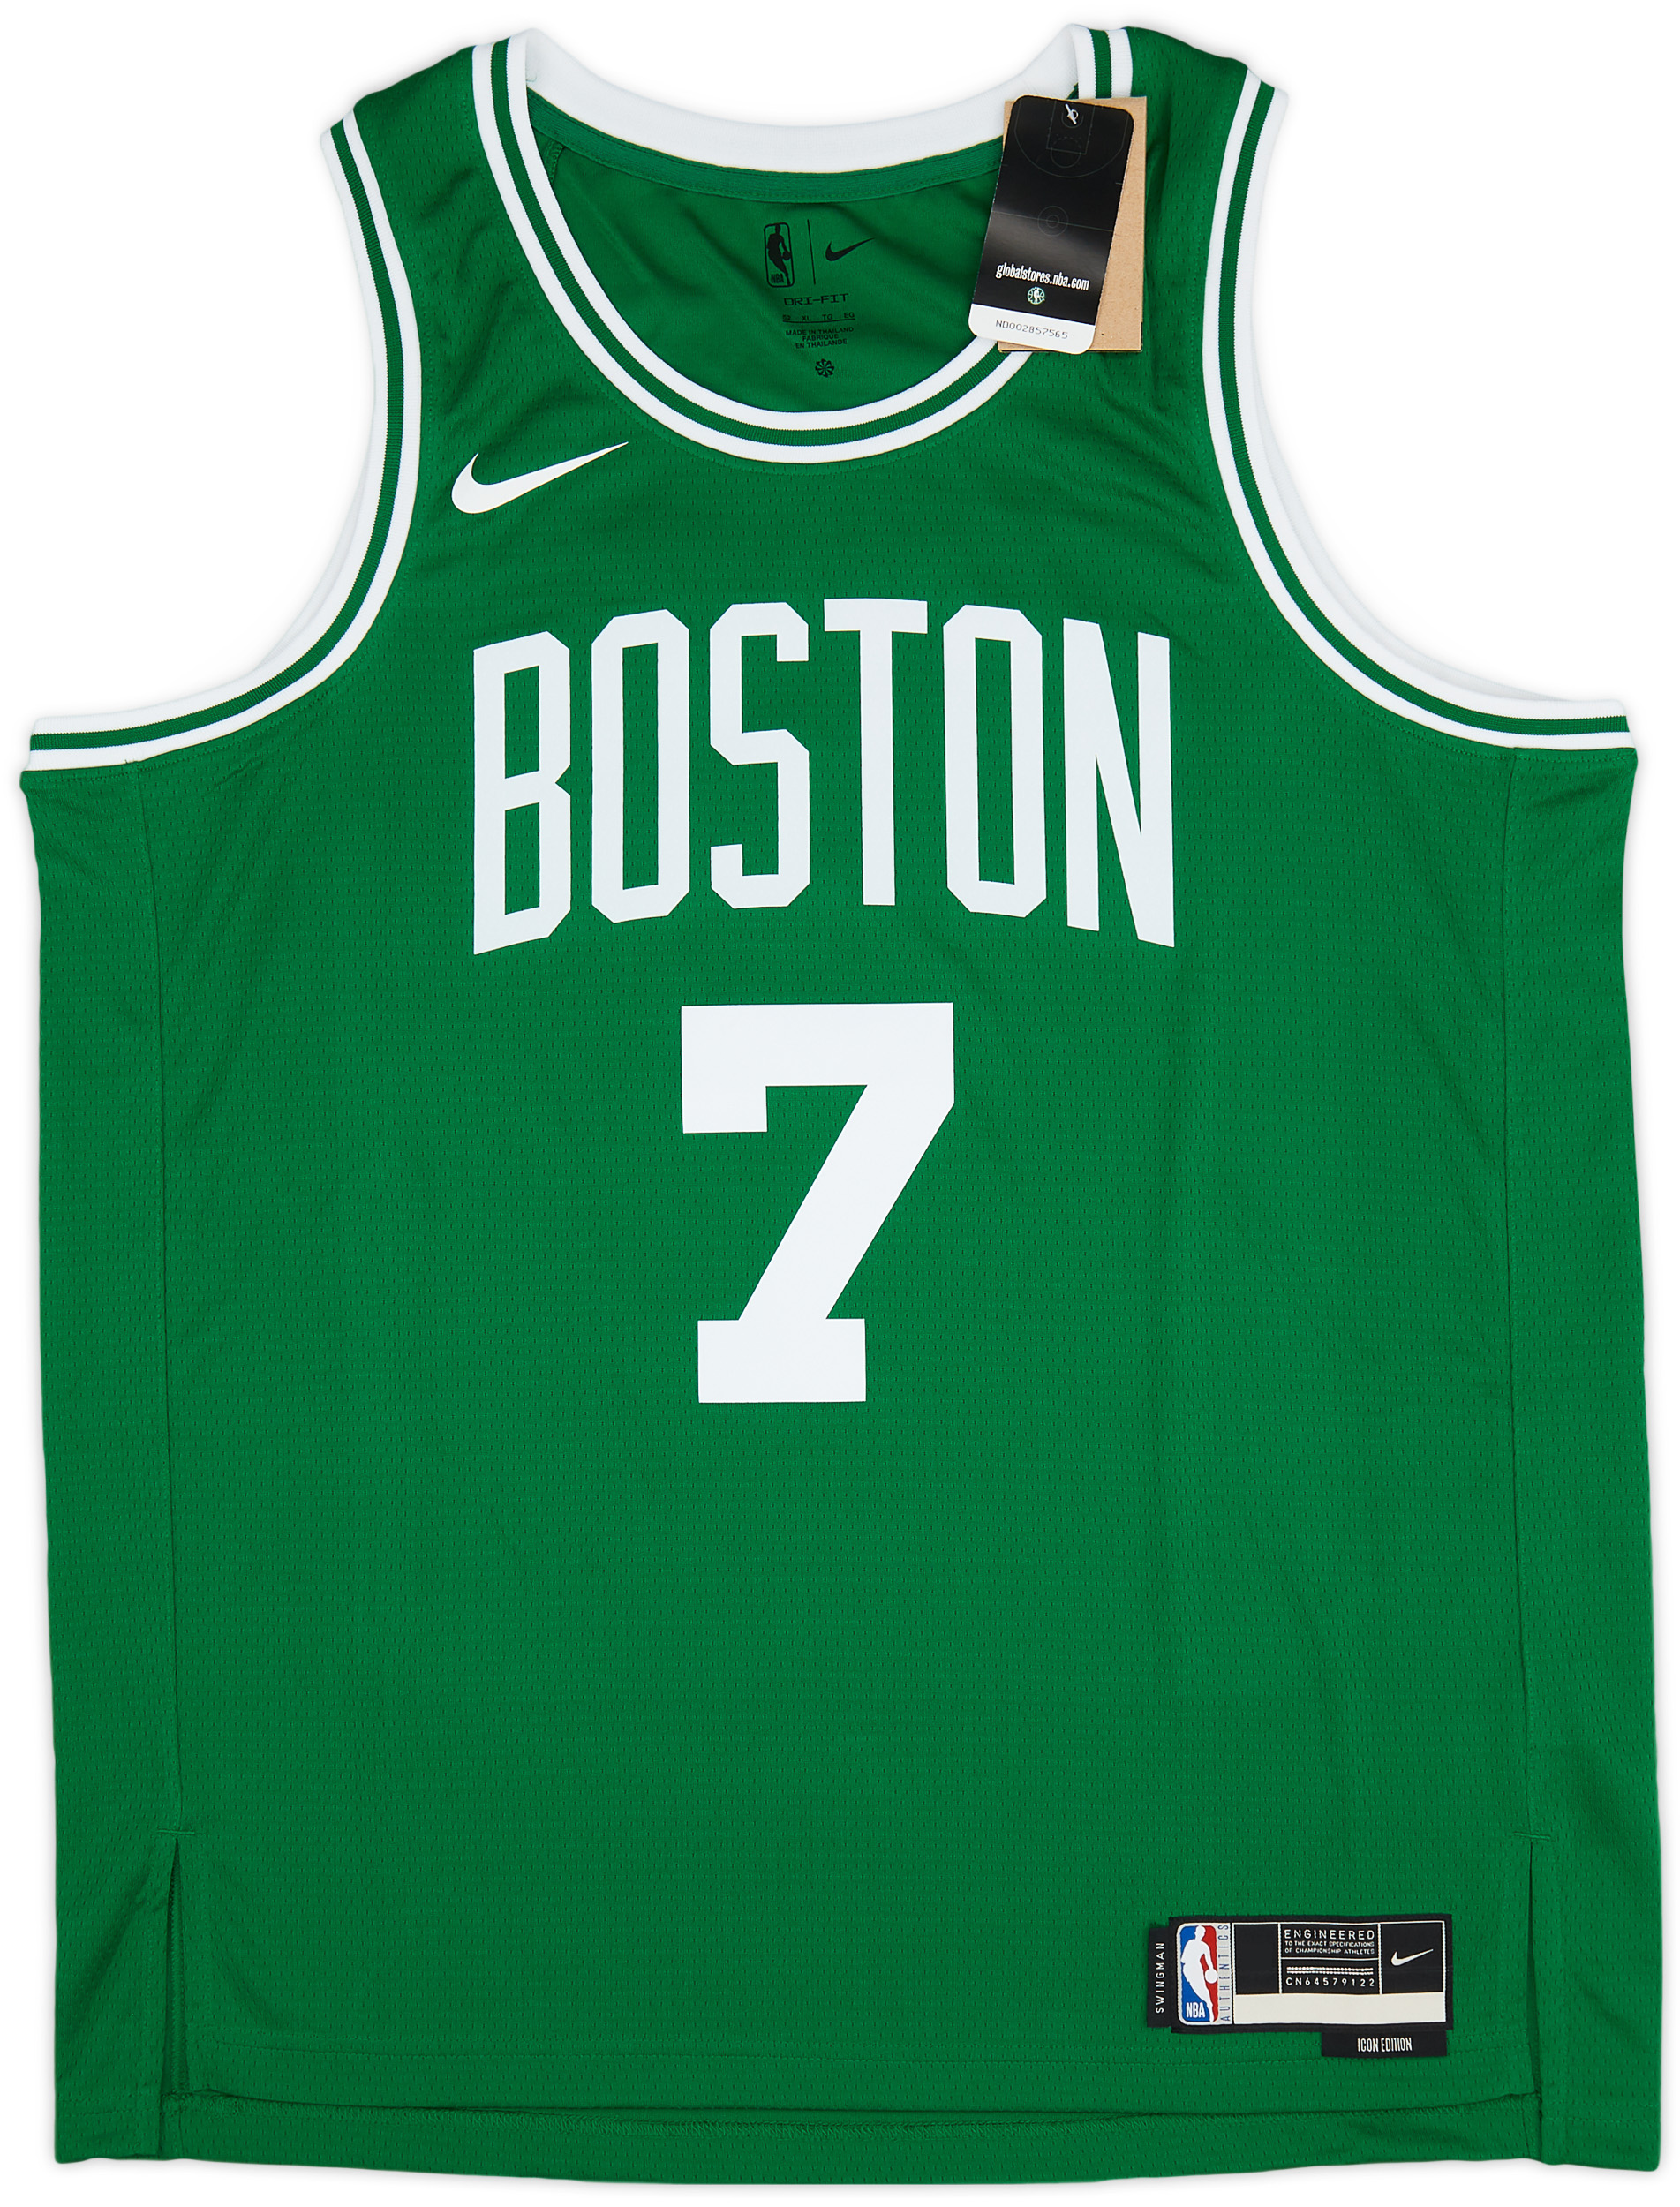 Nike Men's Boston Celtics Jaylen Brown #7 Green Dri-FIT Swingman Jersey